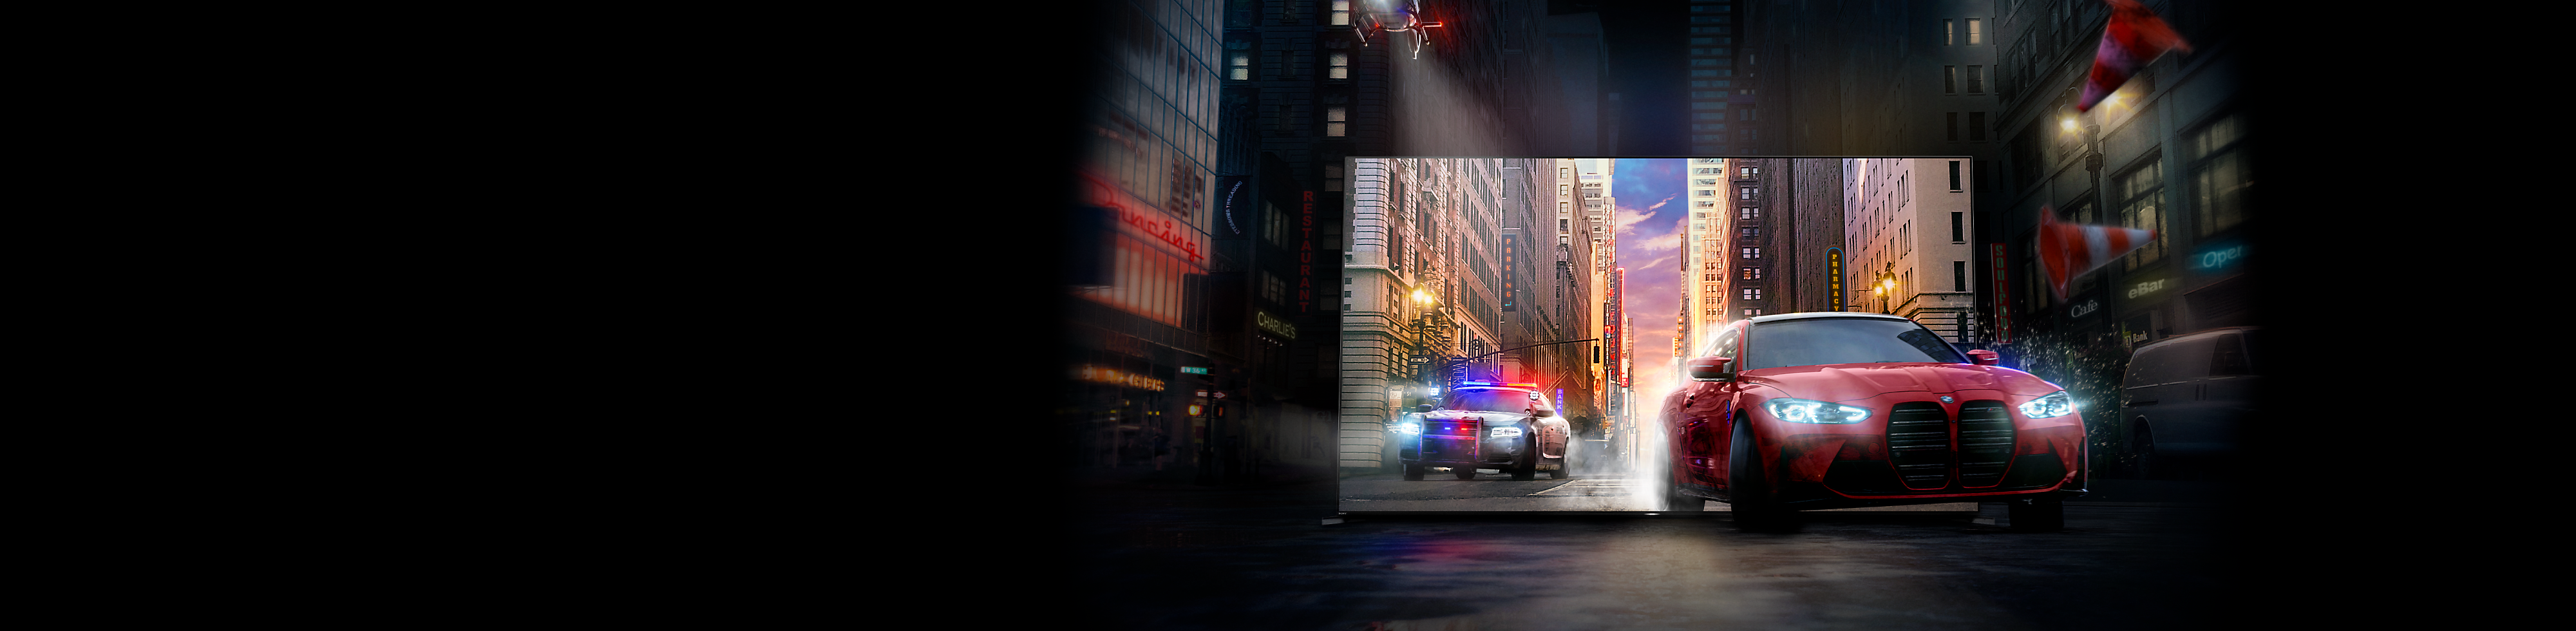 Um carro vermelho seguido por um carro da polícia a projetarem-se de uma TV BRAVIA para uma rua da cidade